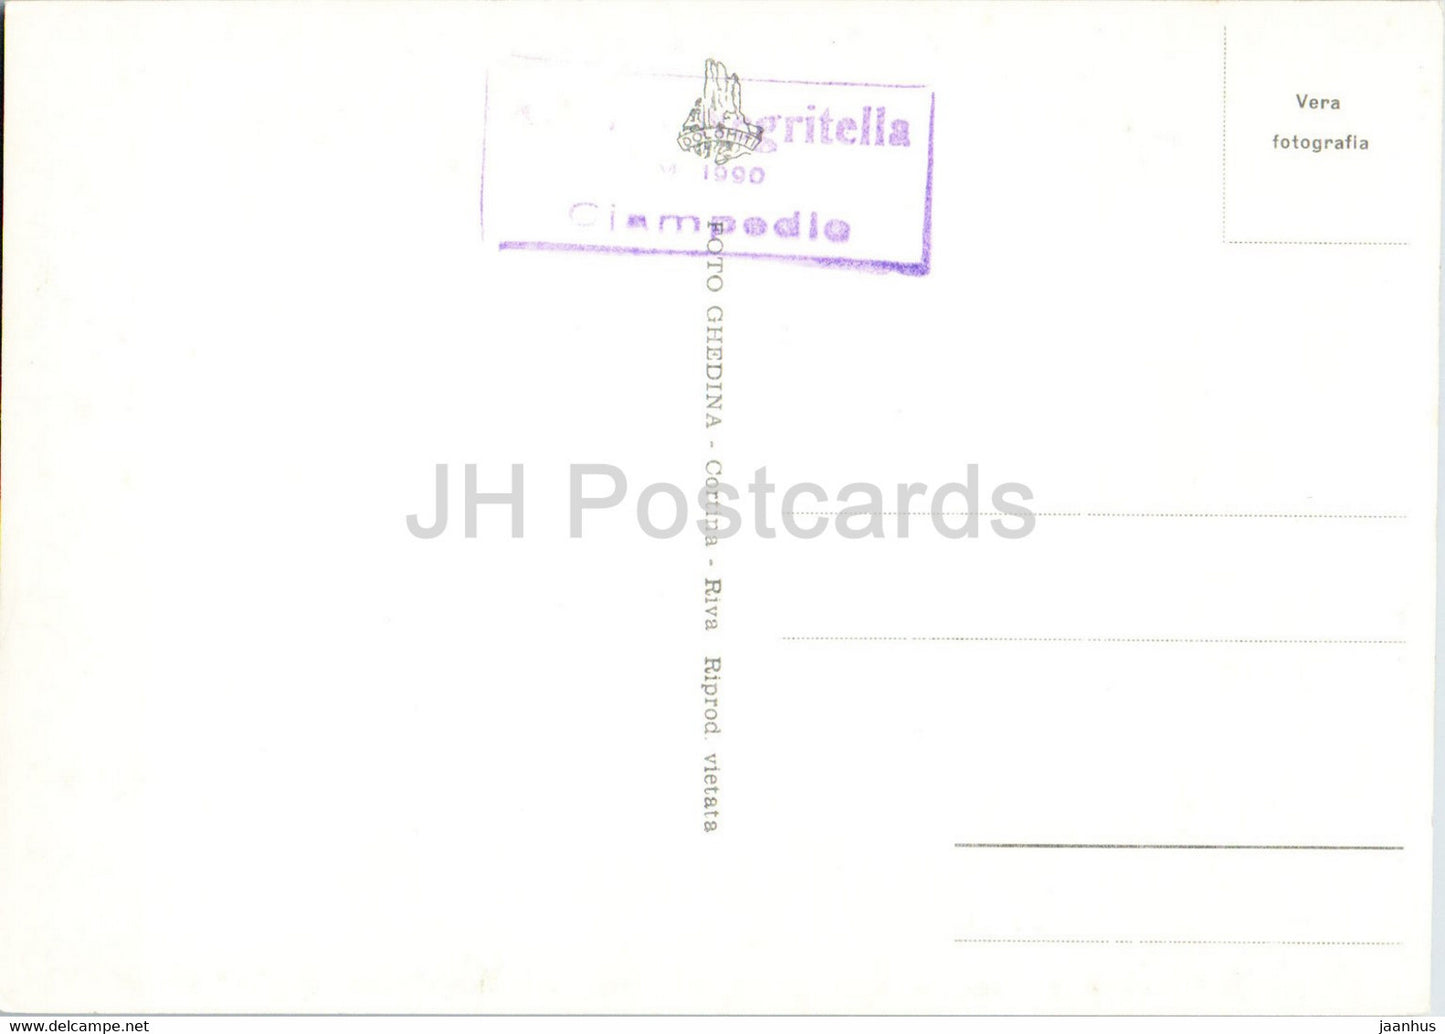 Rif Negritella - Ciampedie - Dirupi di Larsec 2889 - carte postale ancienne - Italie - inutilisée